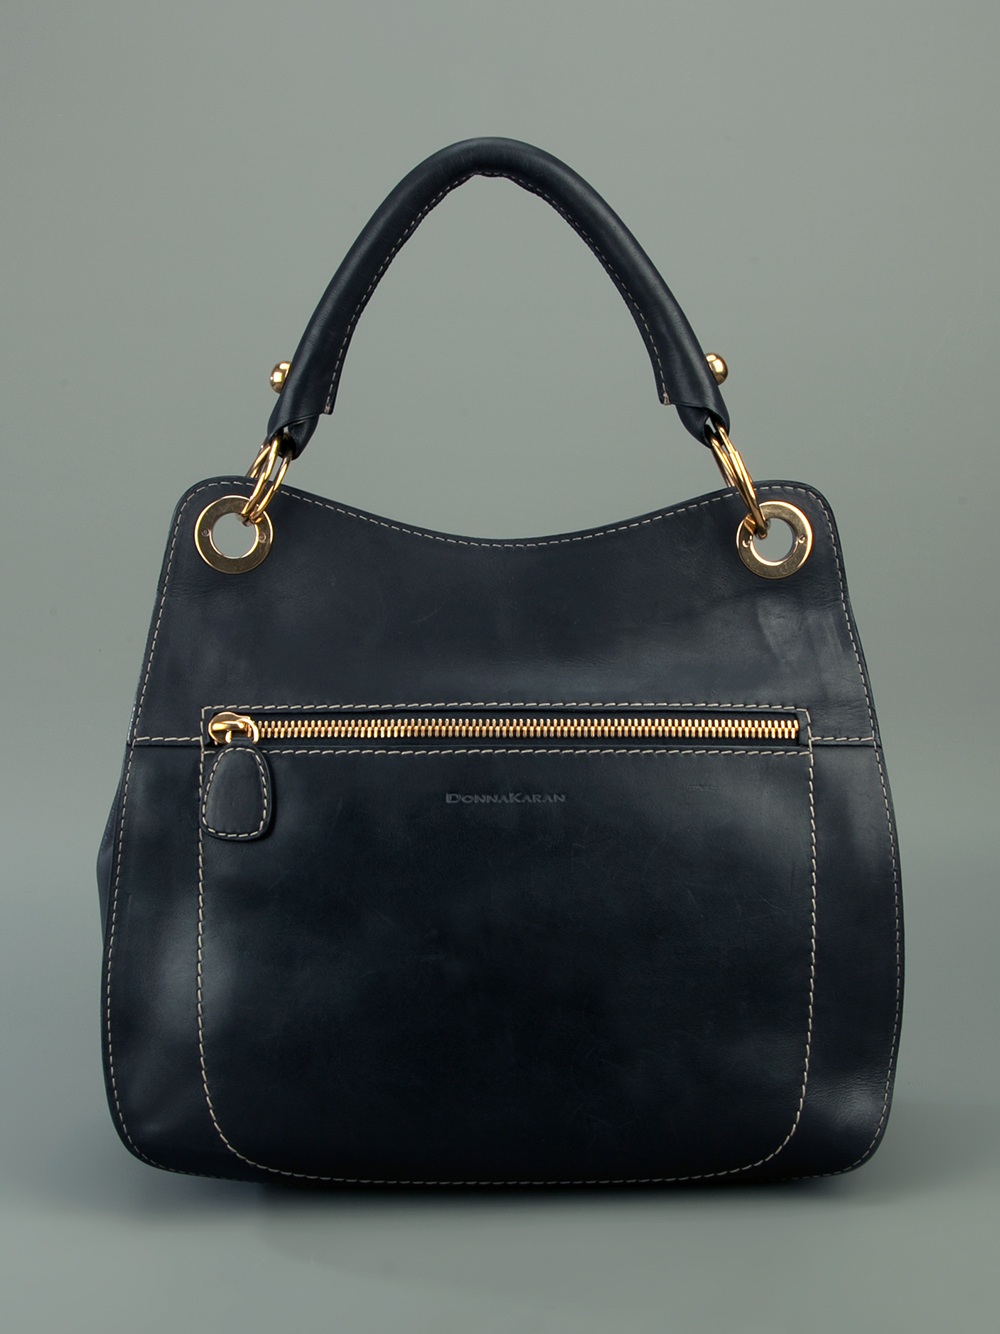 Donna Karan Leather Shoulder Bag in Black | Lyst